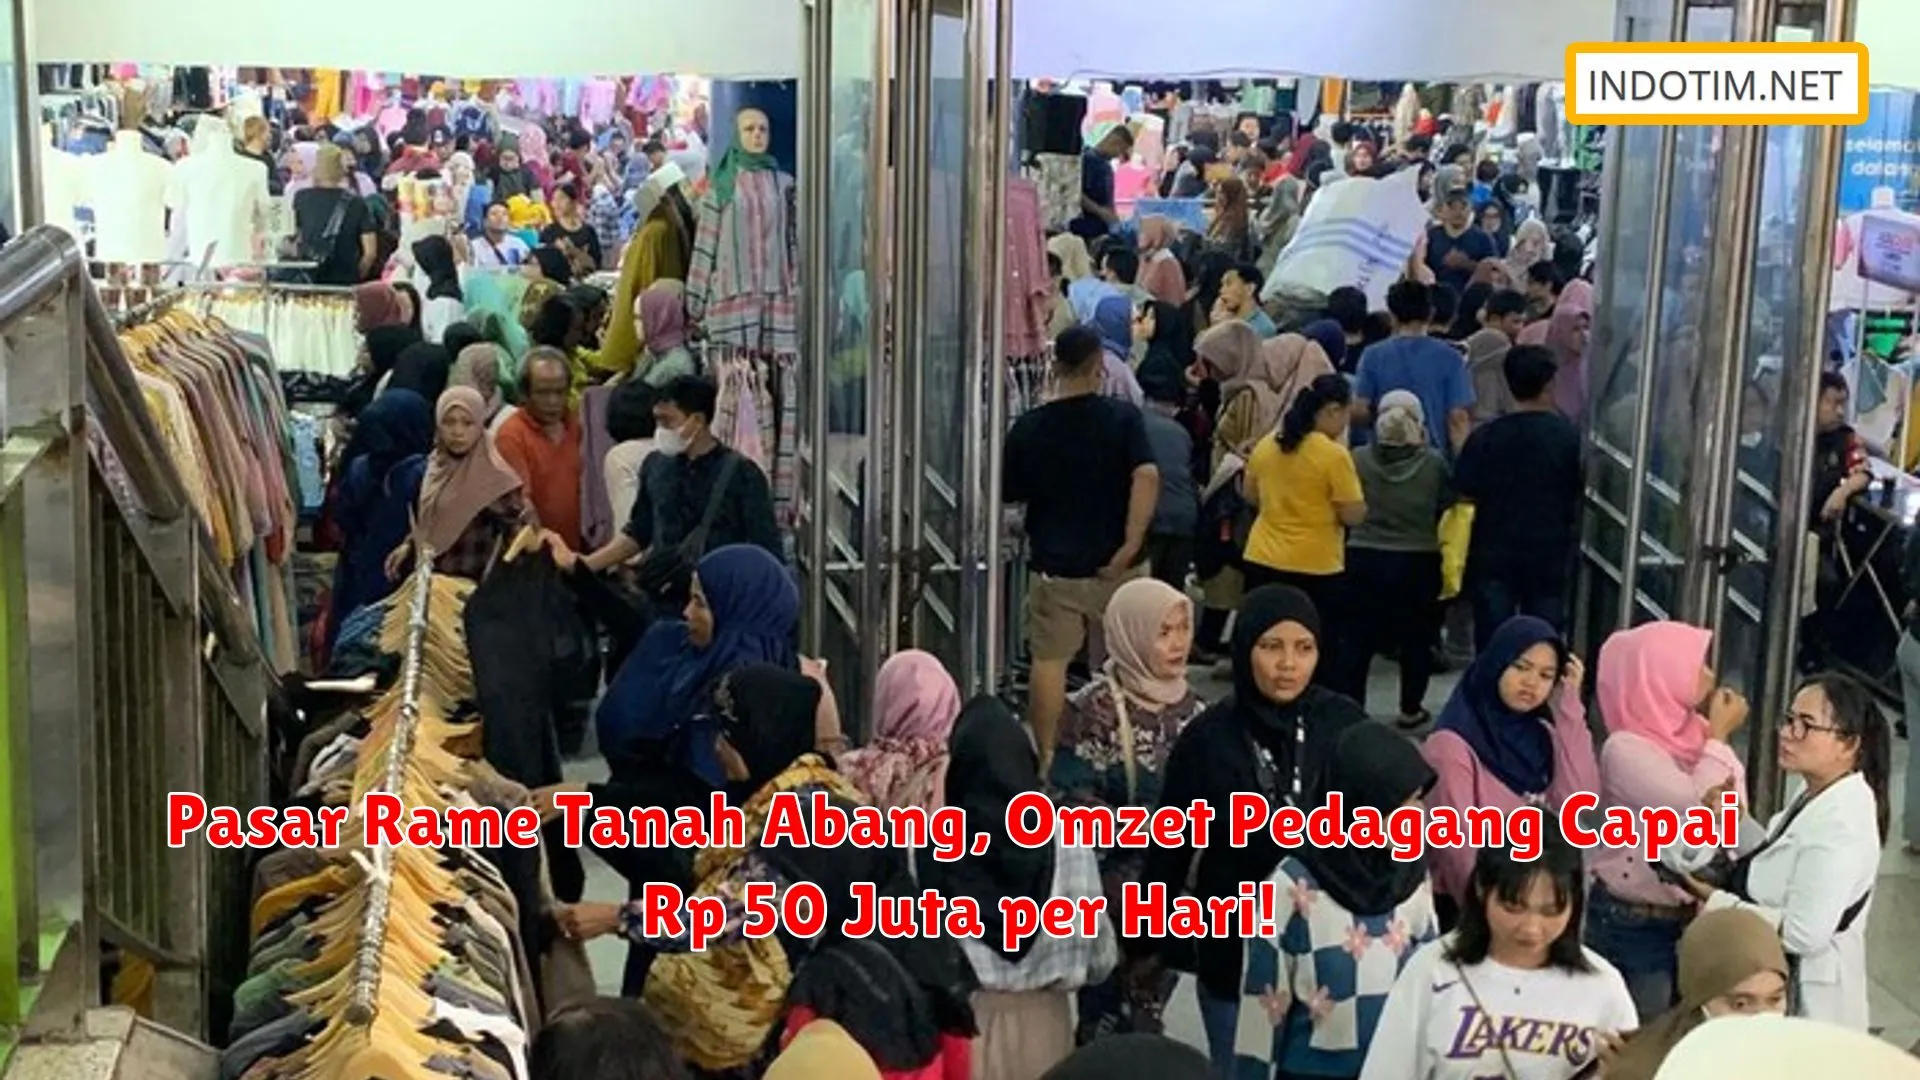 Pasar Rame Tanah Abang, Omzet Pedagang Capai Rp 50 Juta per Hari!